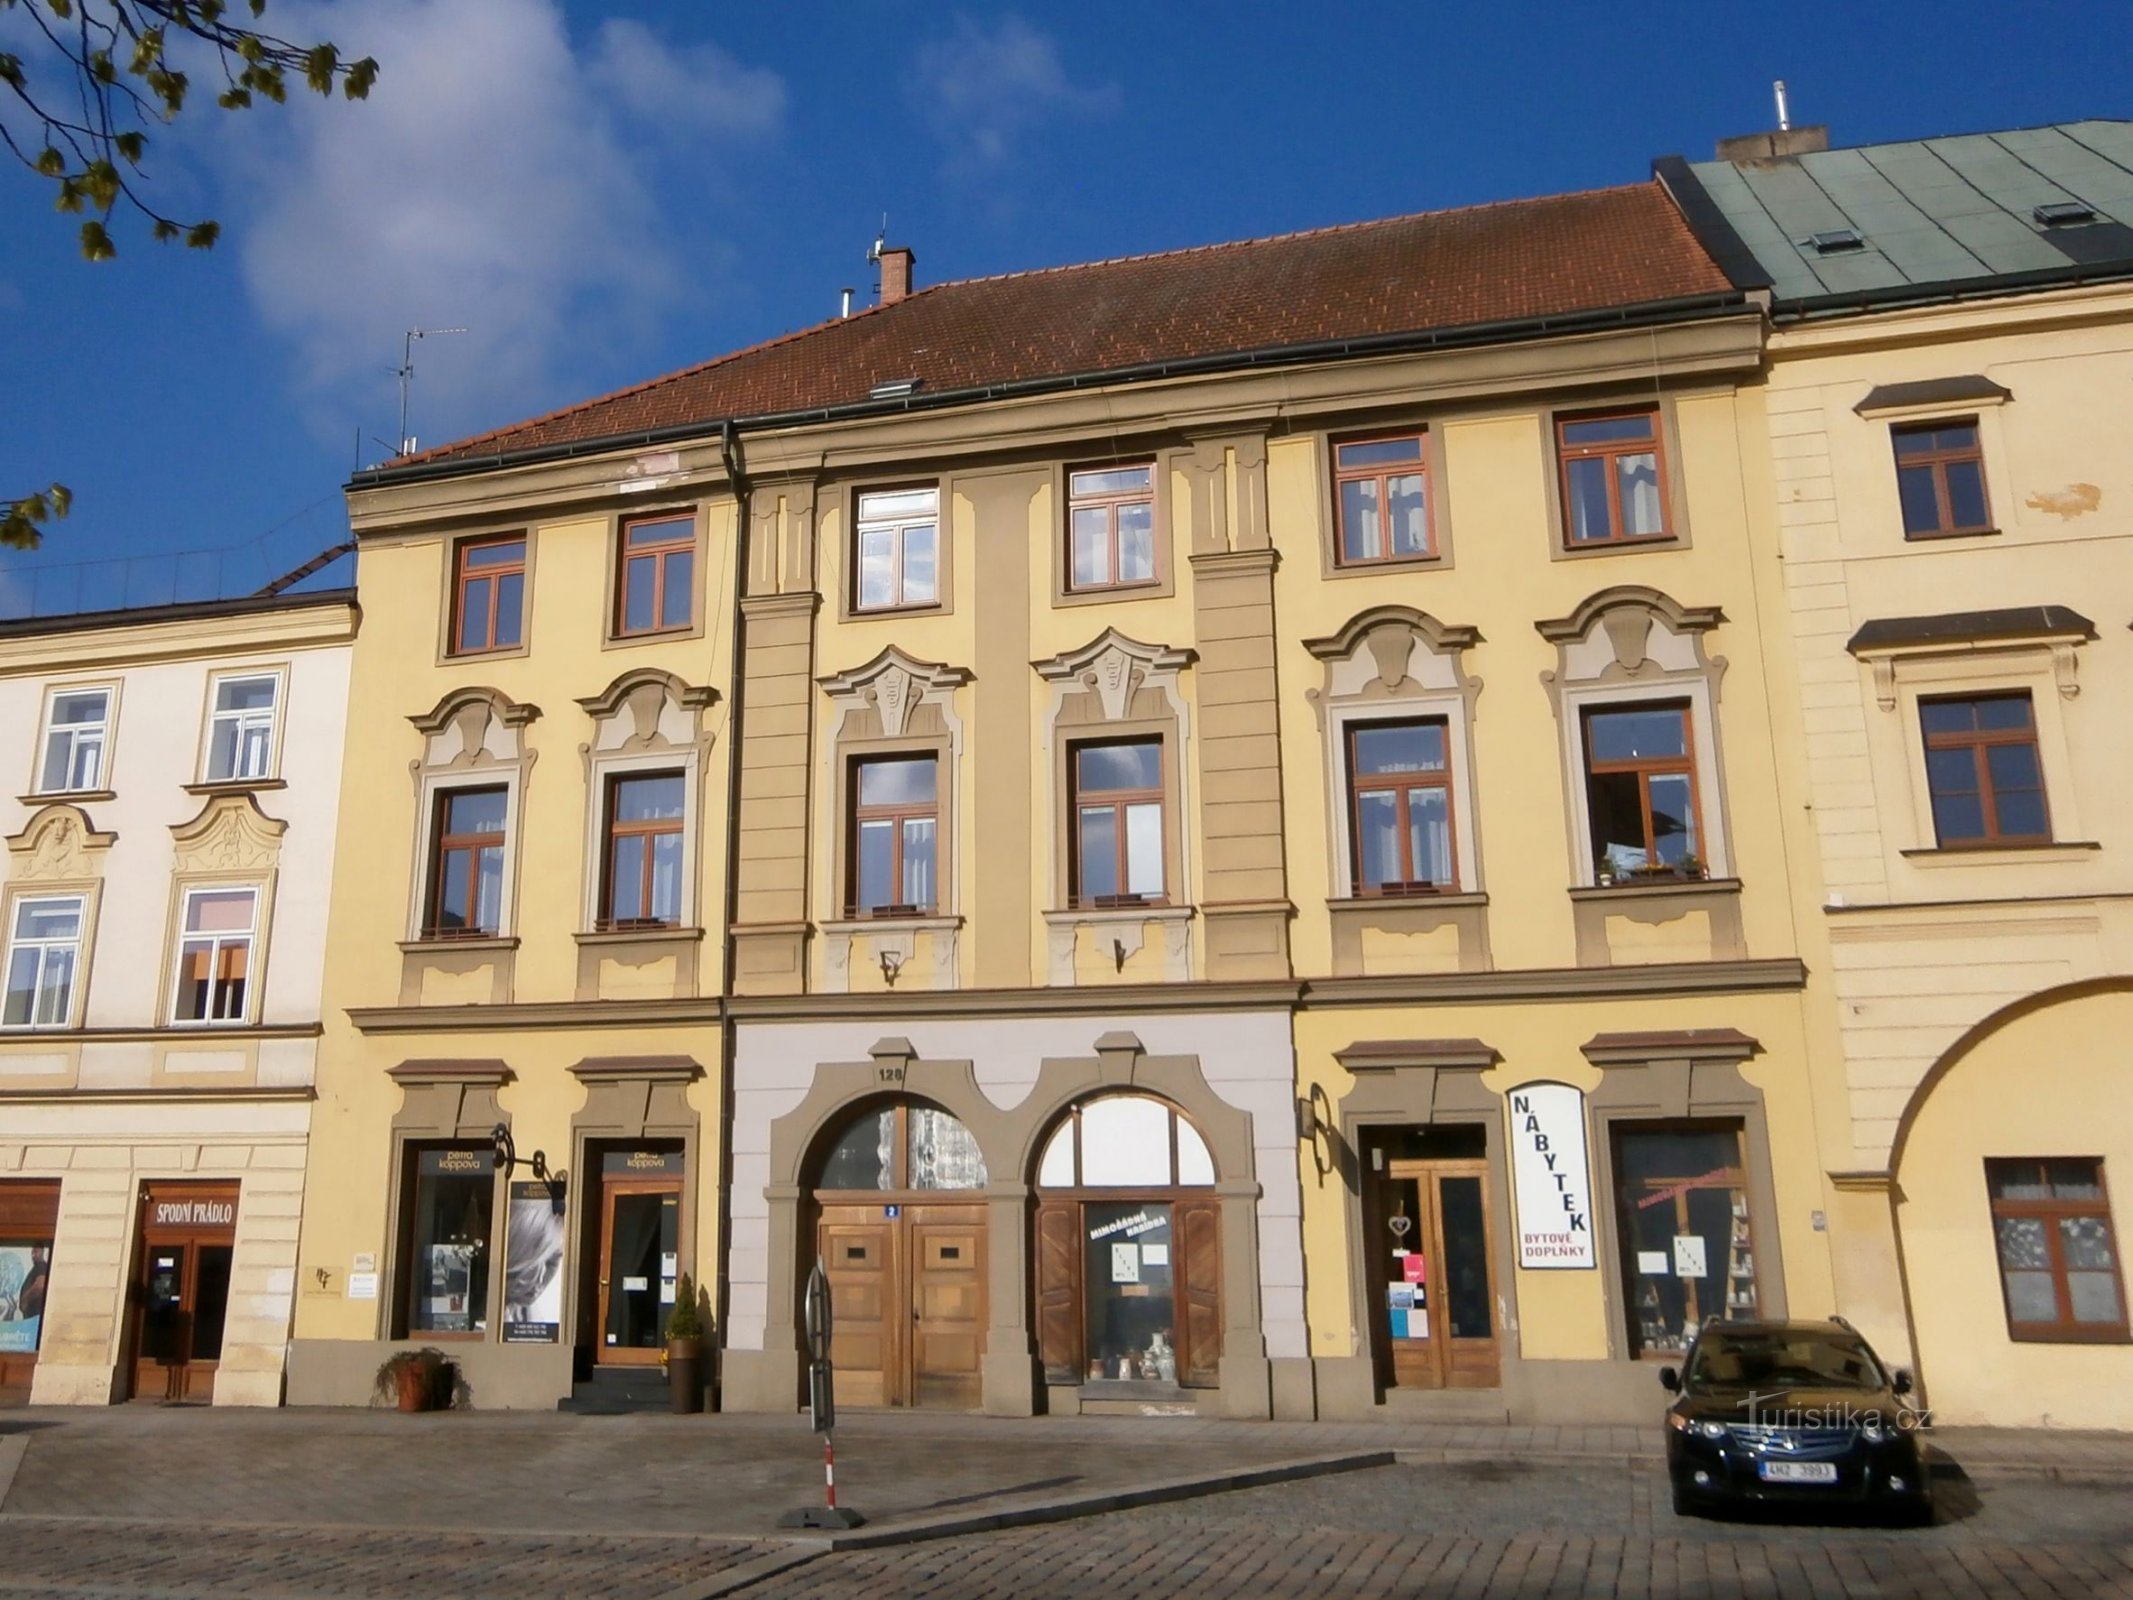 Malé náměstí no. 128 (Hradec Králové, 14.4.2017. huhtikuuta XNUMX)